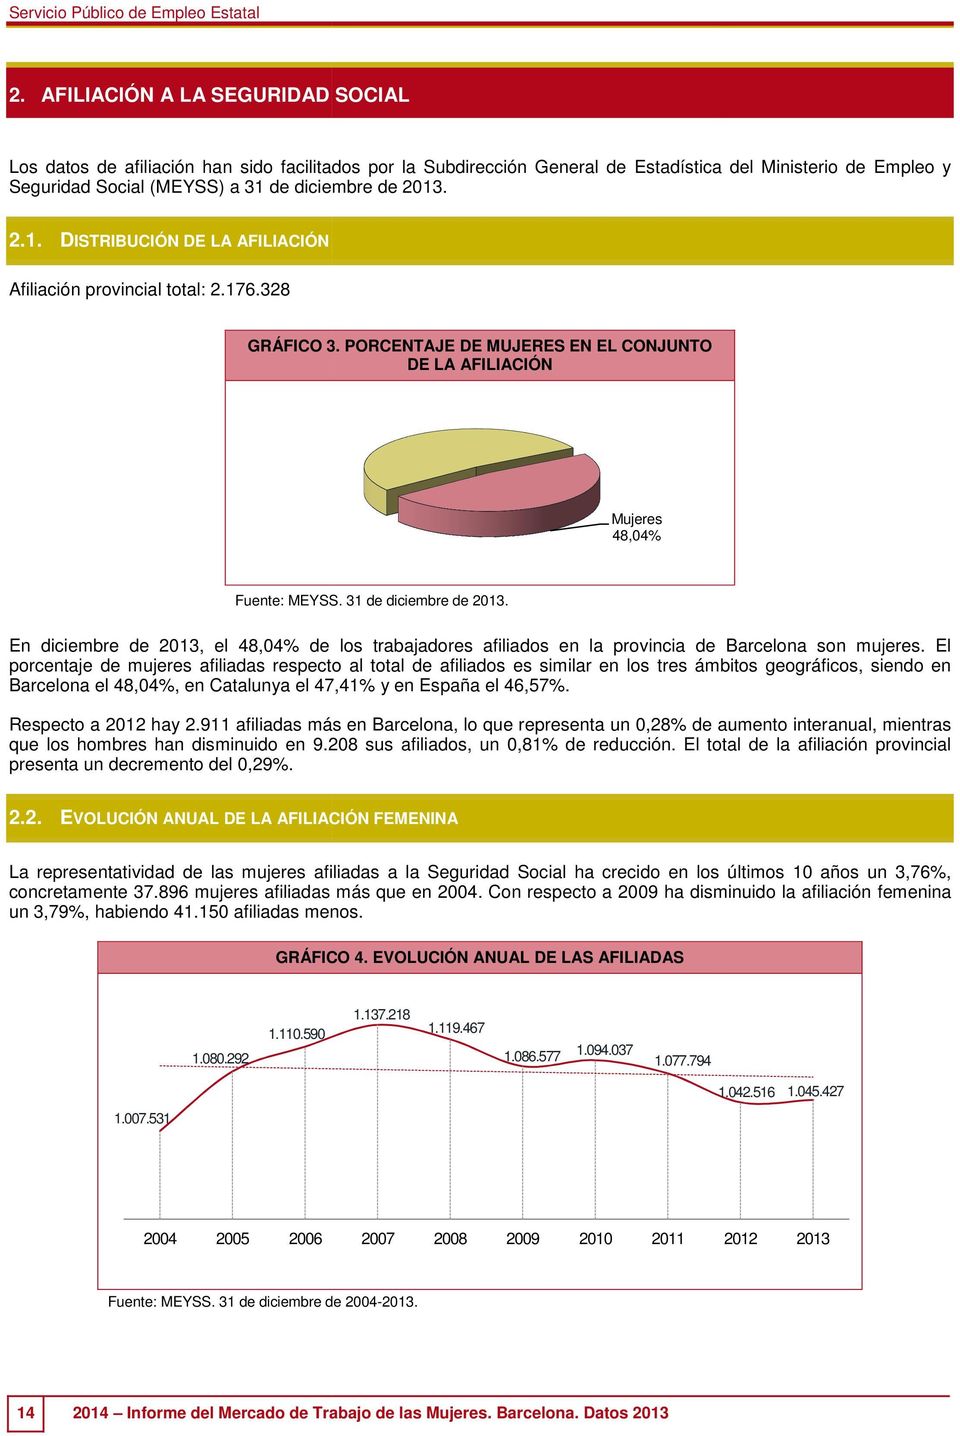 En diciembre de 2013,, el 48,04% de los trabajadores afiliados en la provincia de Barcelona son mujeres.